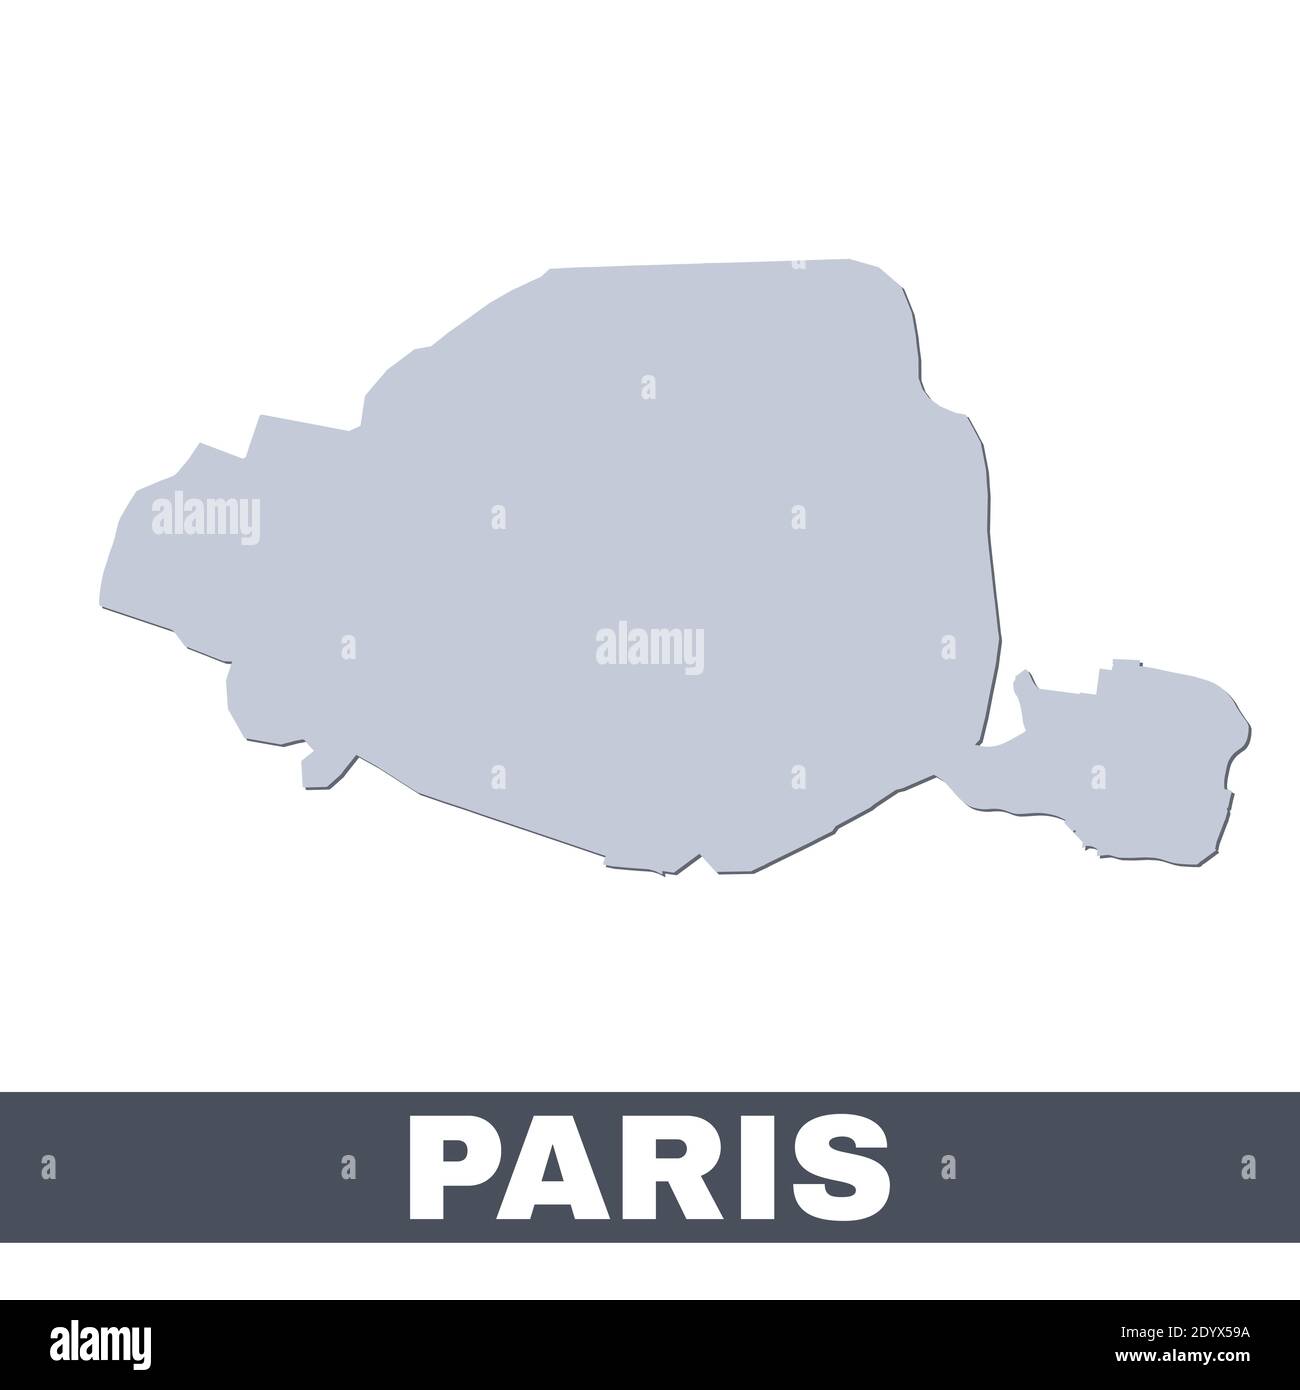 Plan de Paris. Carte vectorielle de la ville de Paris à l'intérieur de ses frontières. Gris avec ombre sur fond blanc. Illustration isolée. Illustration de Vecteur